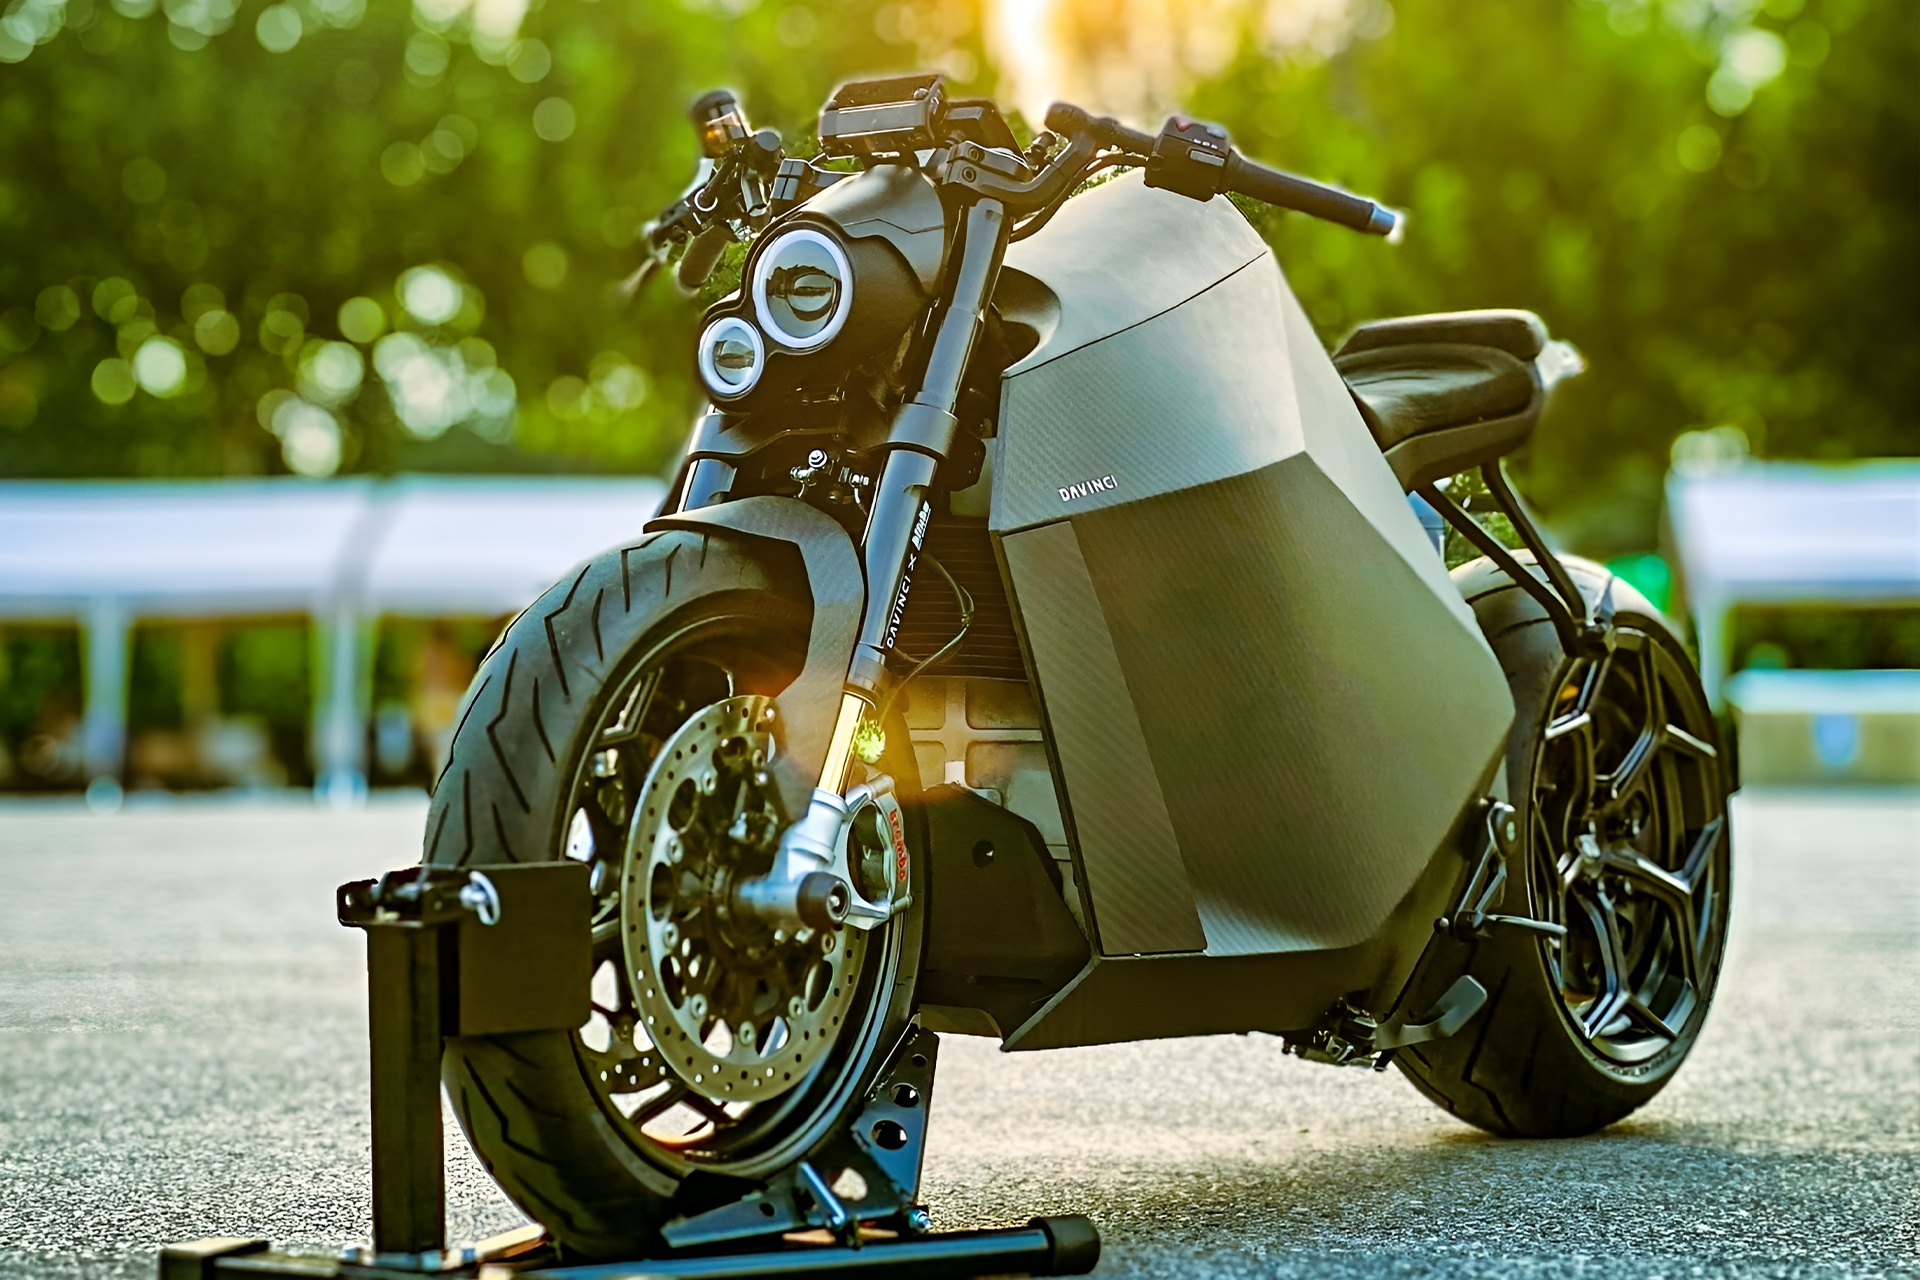 Moto elétrica no estilo Exterminador do Futuro vai de 0 a 100 quilômetros por hora em apenas 3 segundos e atinge uma velocidade máxima de 200 Km h